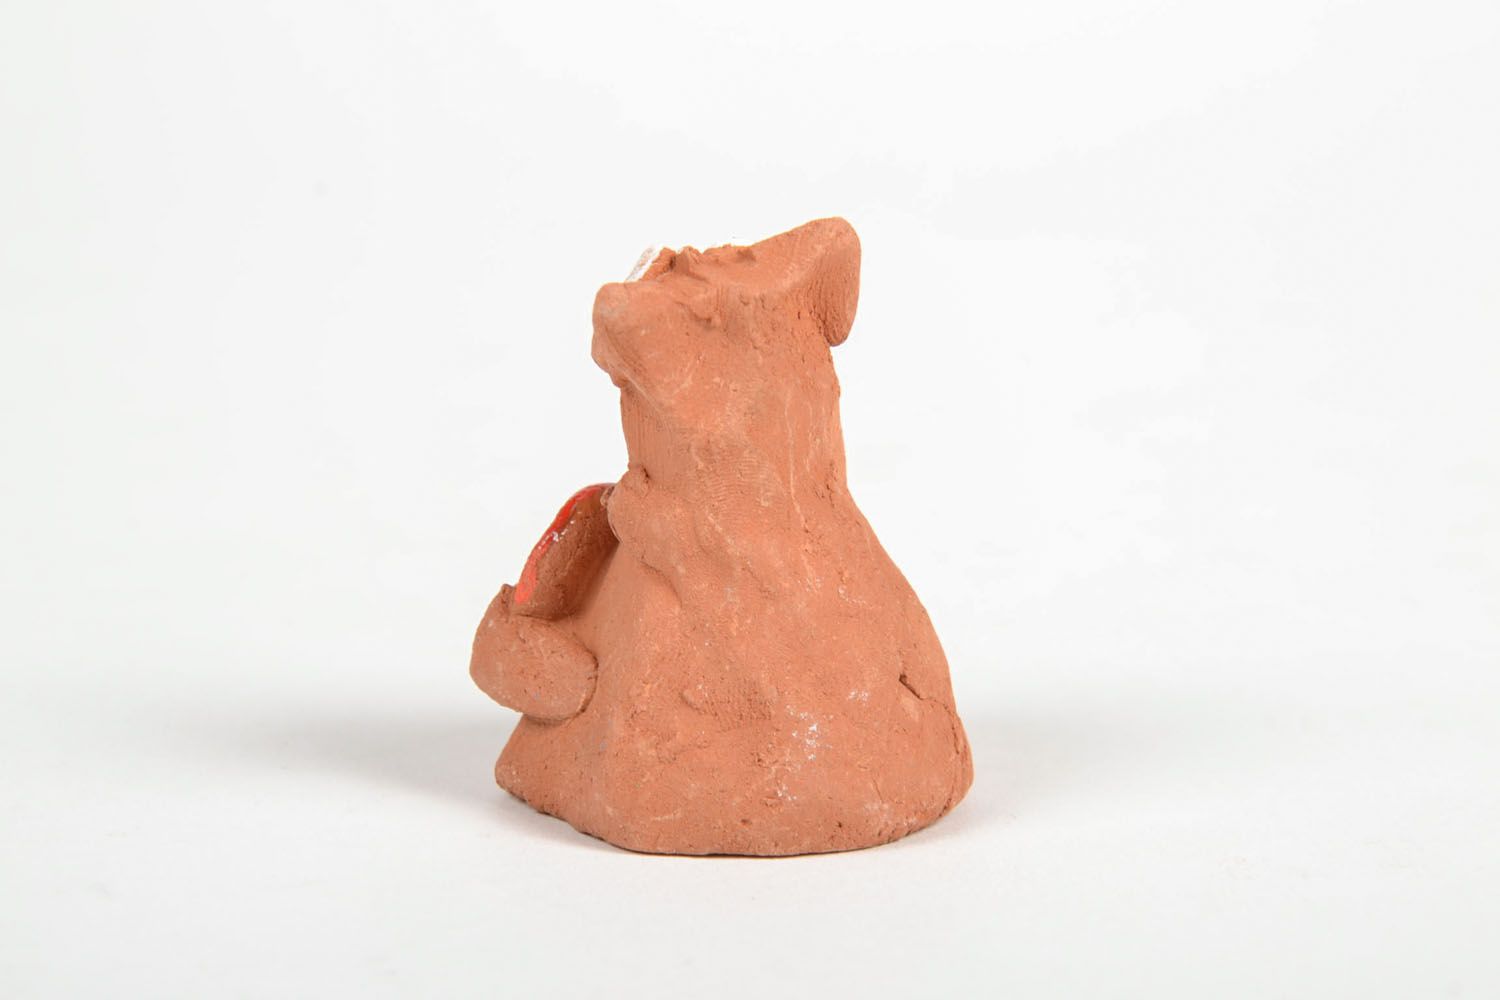 Gatto in ceramica fatto a mano figurina divertente souvenir animaletto originale foto 3